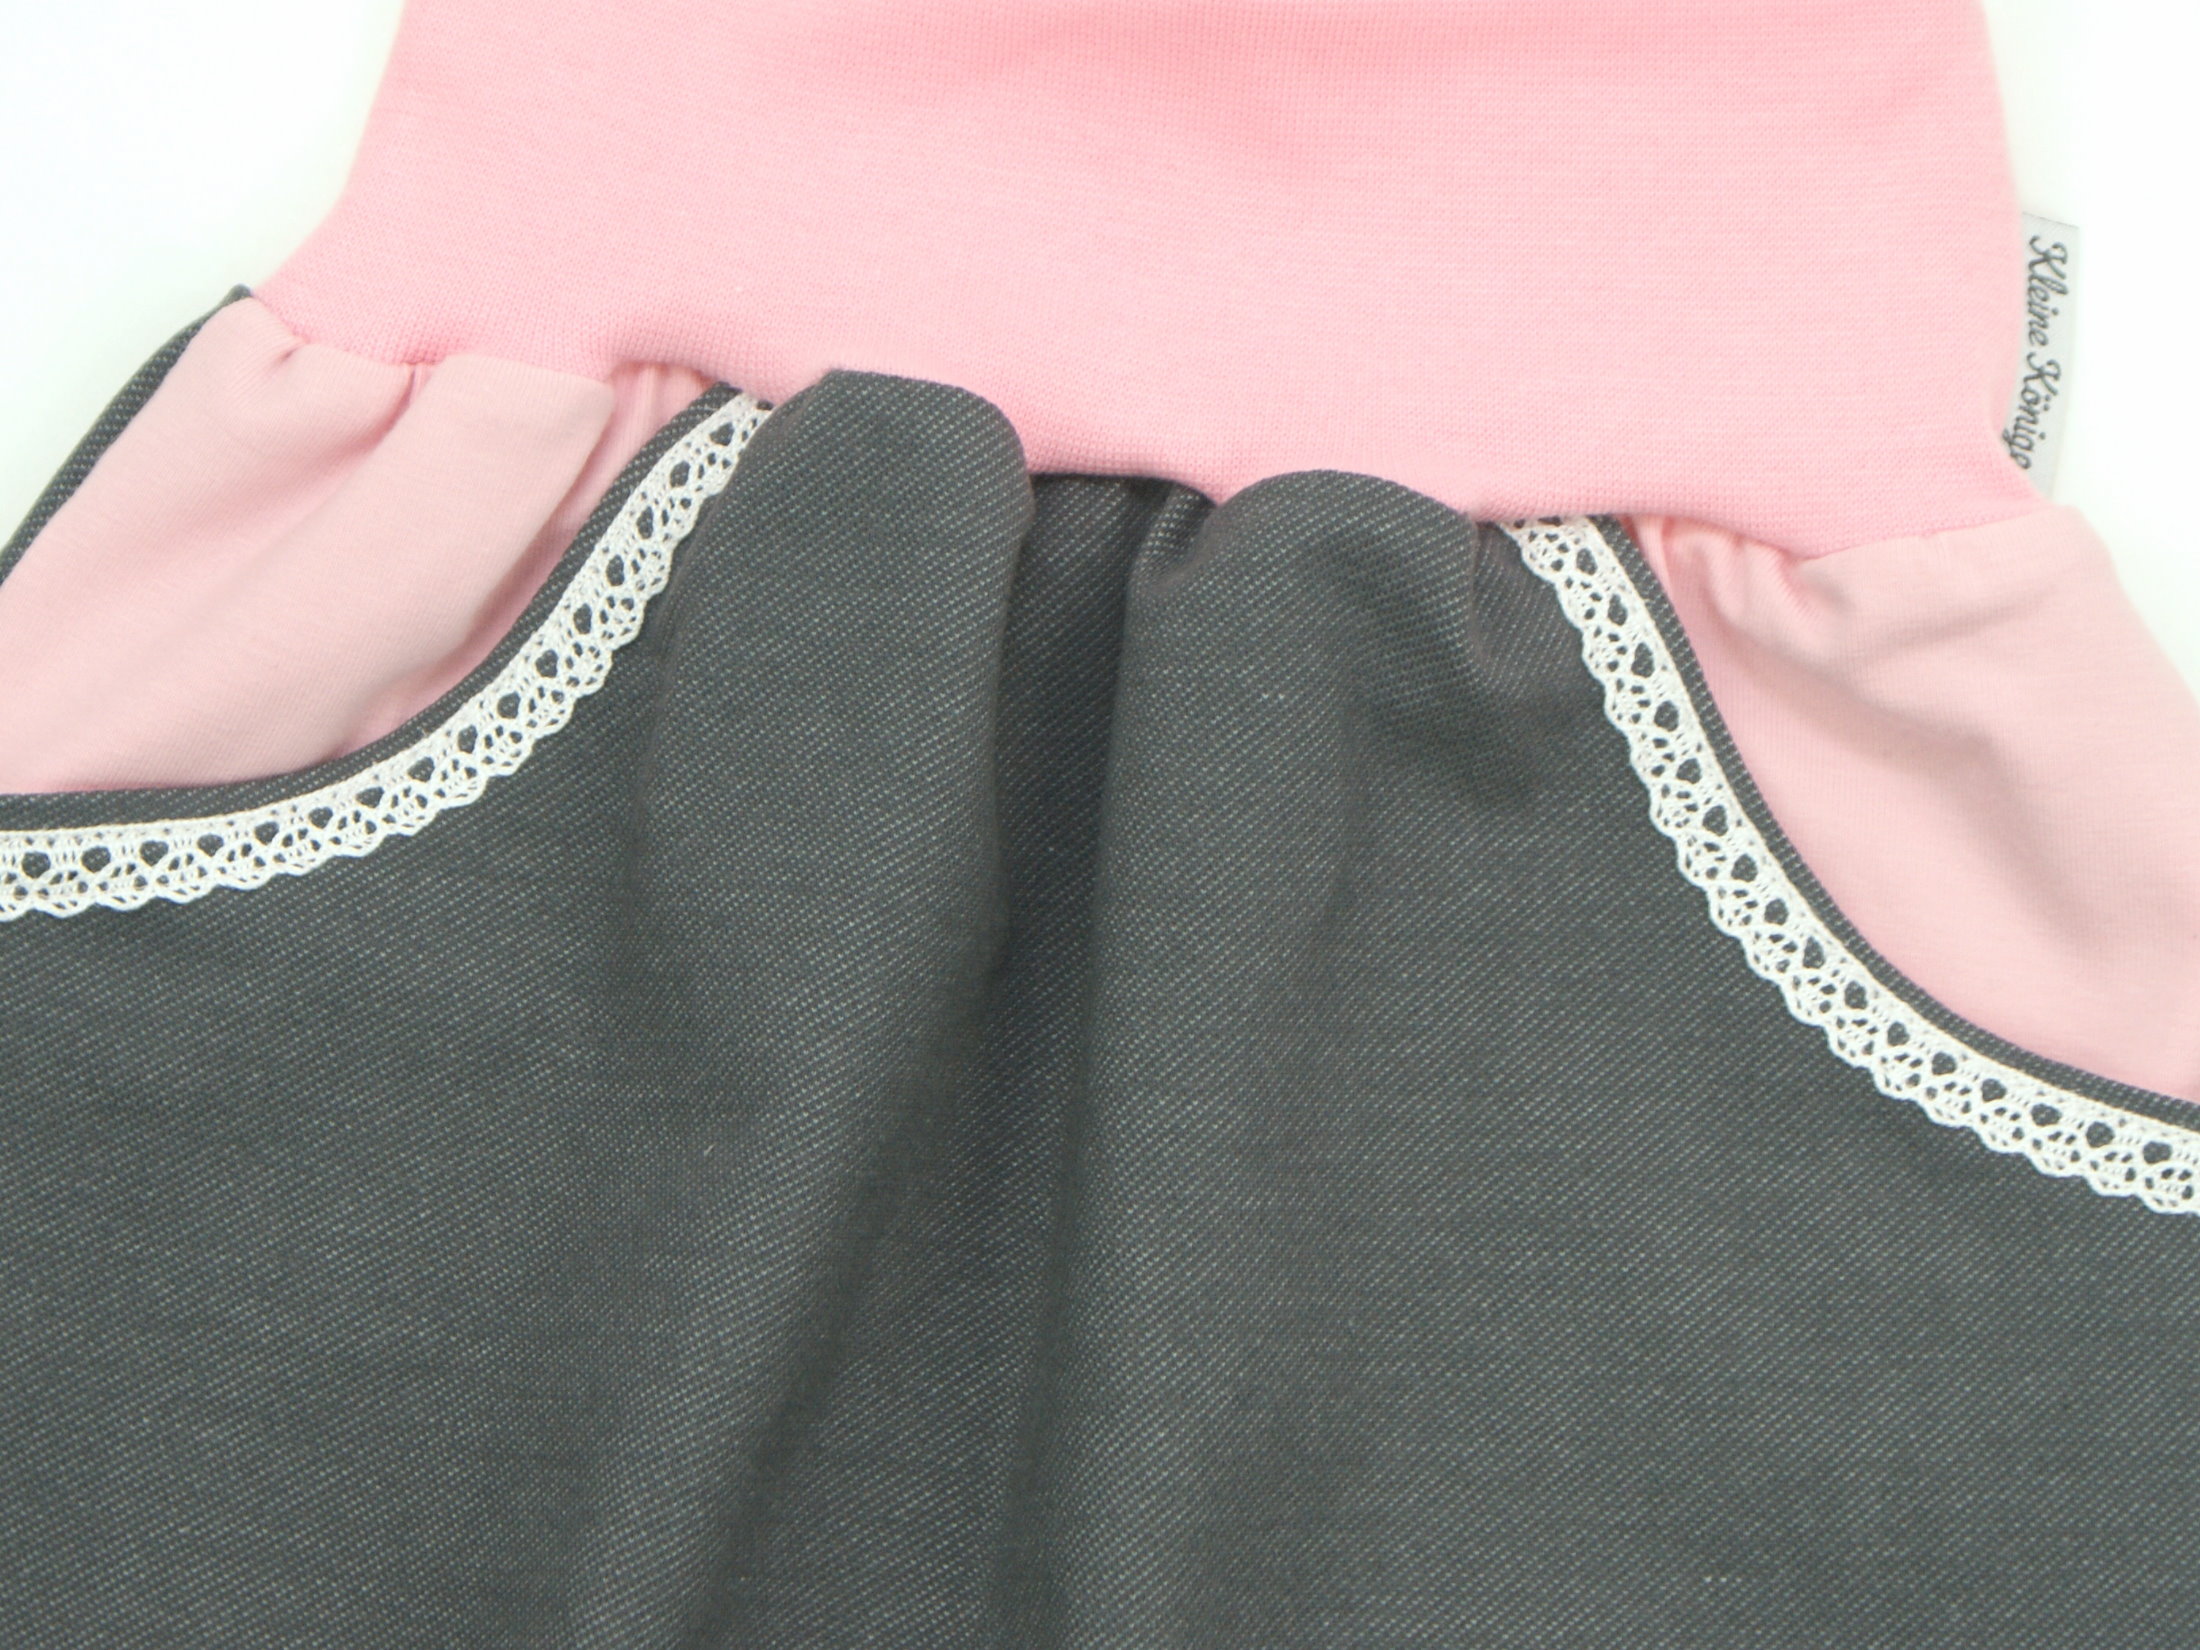 Kinder Bermuda-Shorts mit Taschen Jeansjersey grau rosa